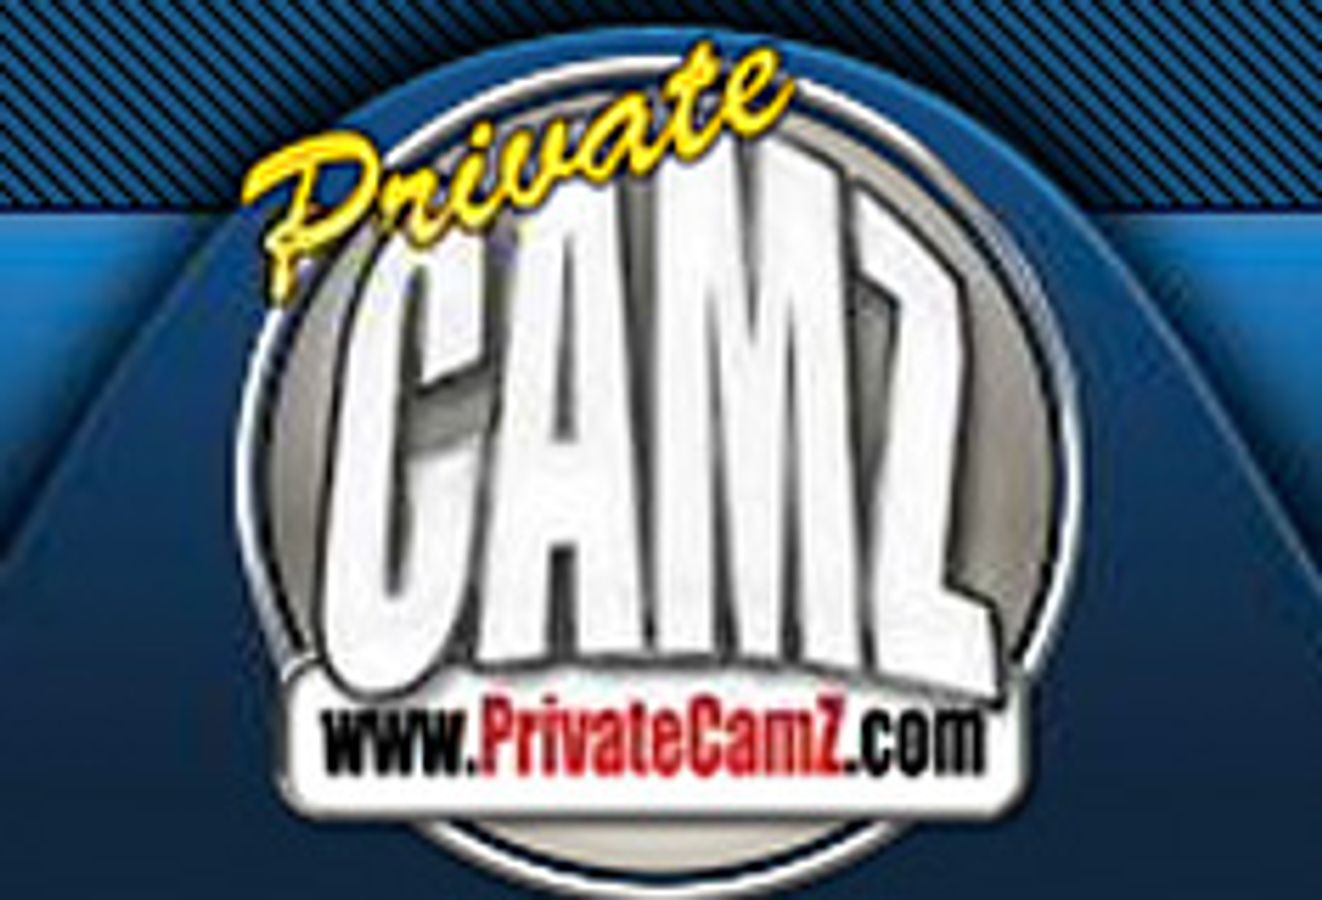 PrivateCamz